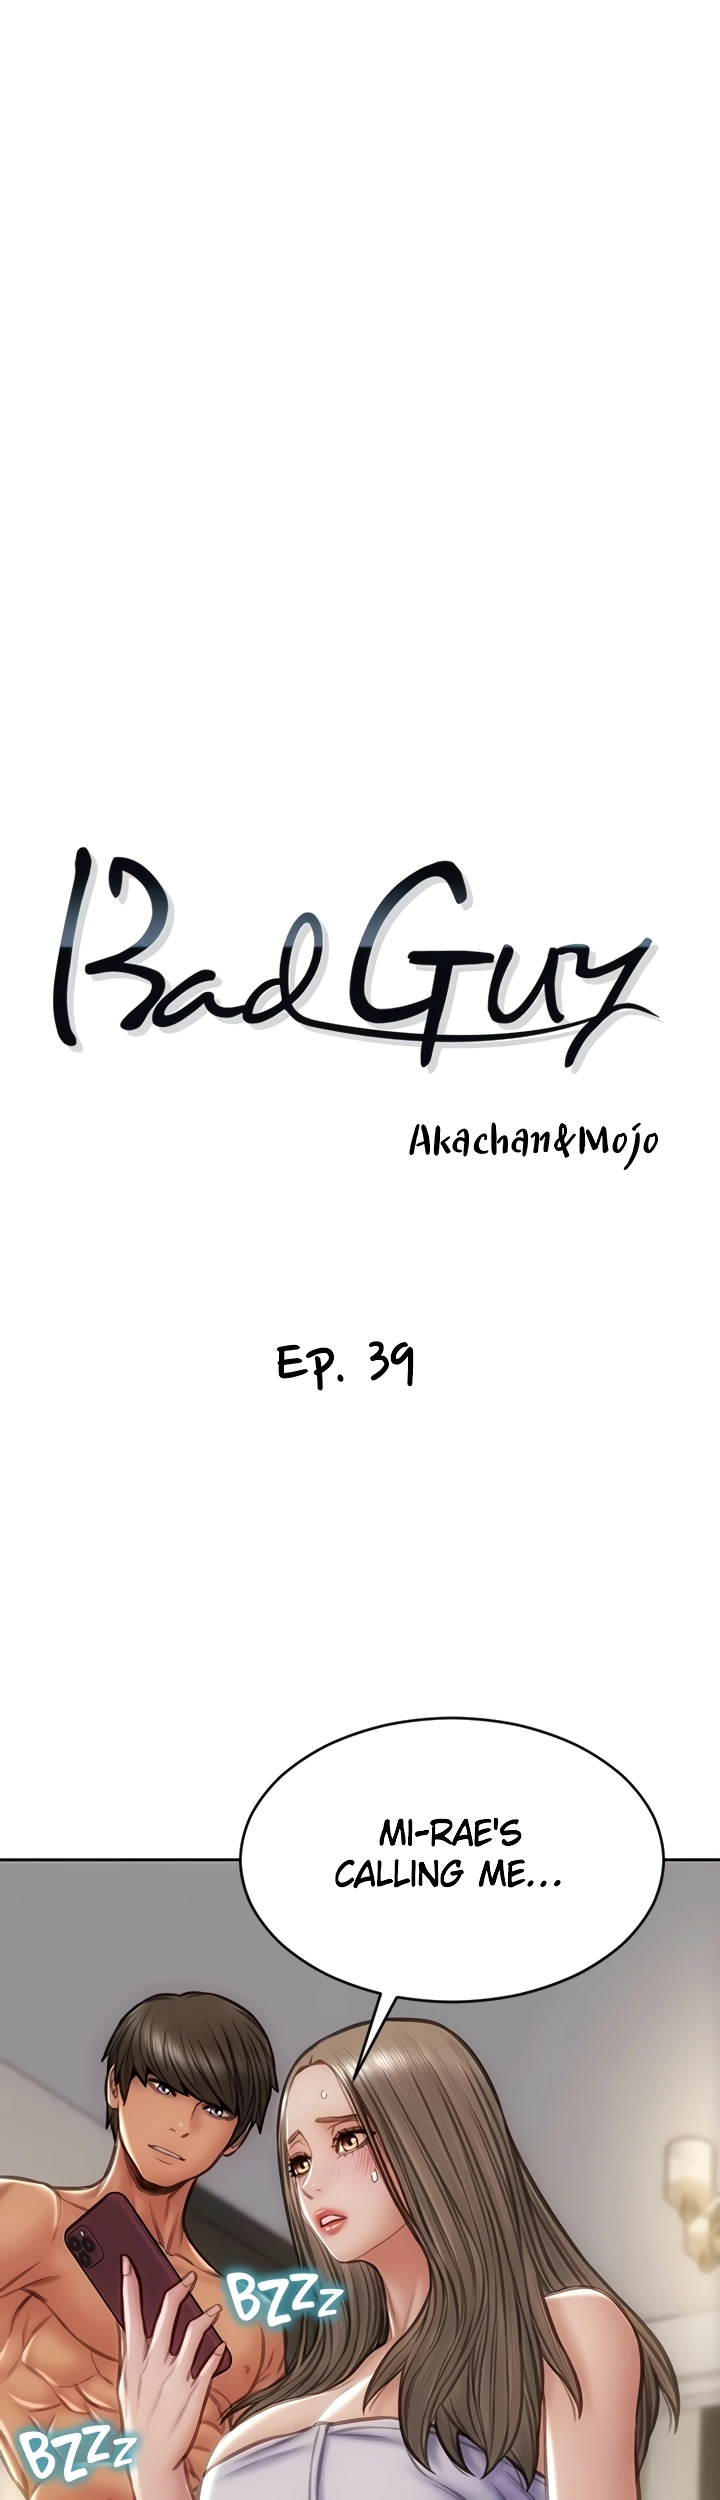 The image Bad Guy Revenge - Chapter 39 - 03db6275cbe508fb96 - ManhwaManga.io